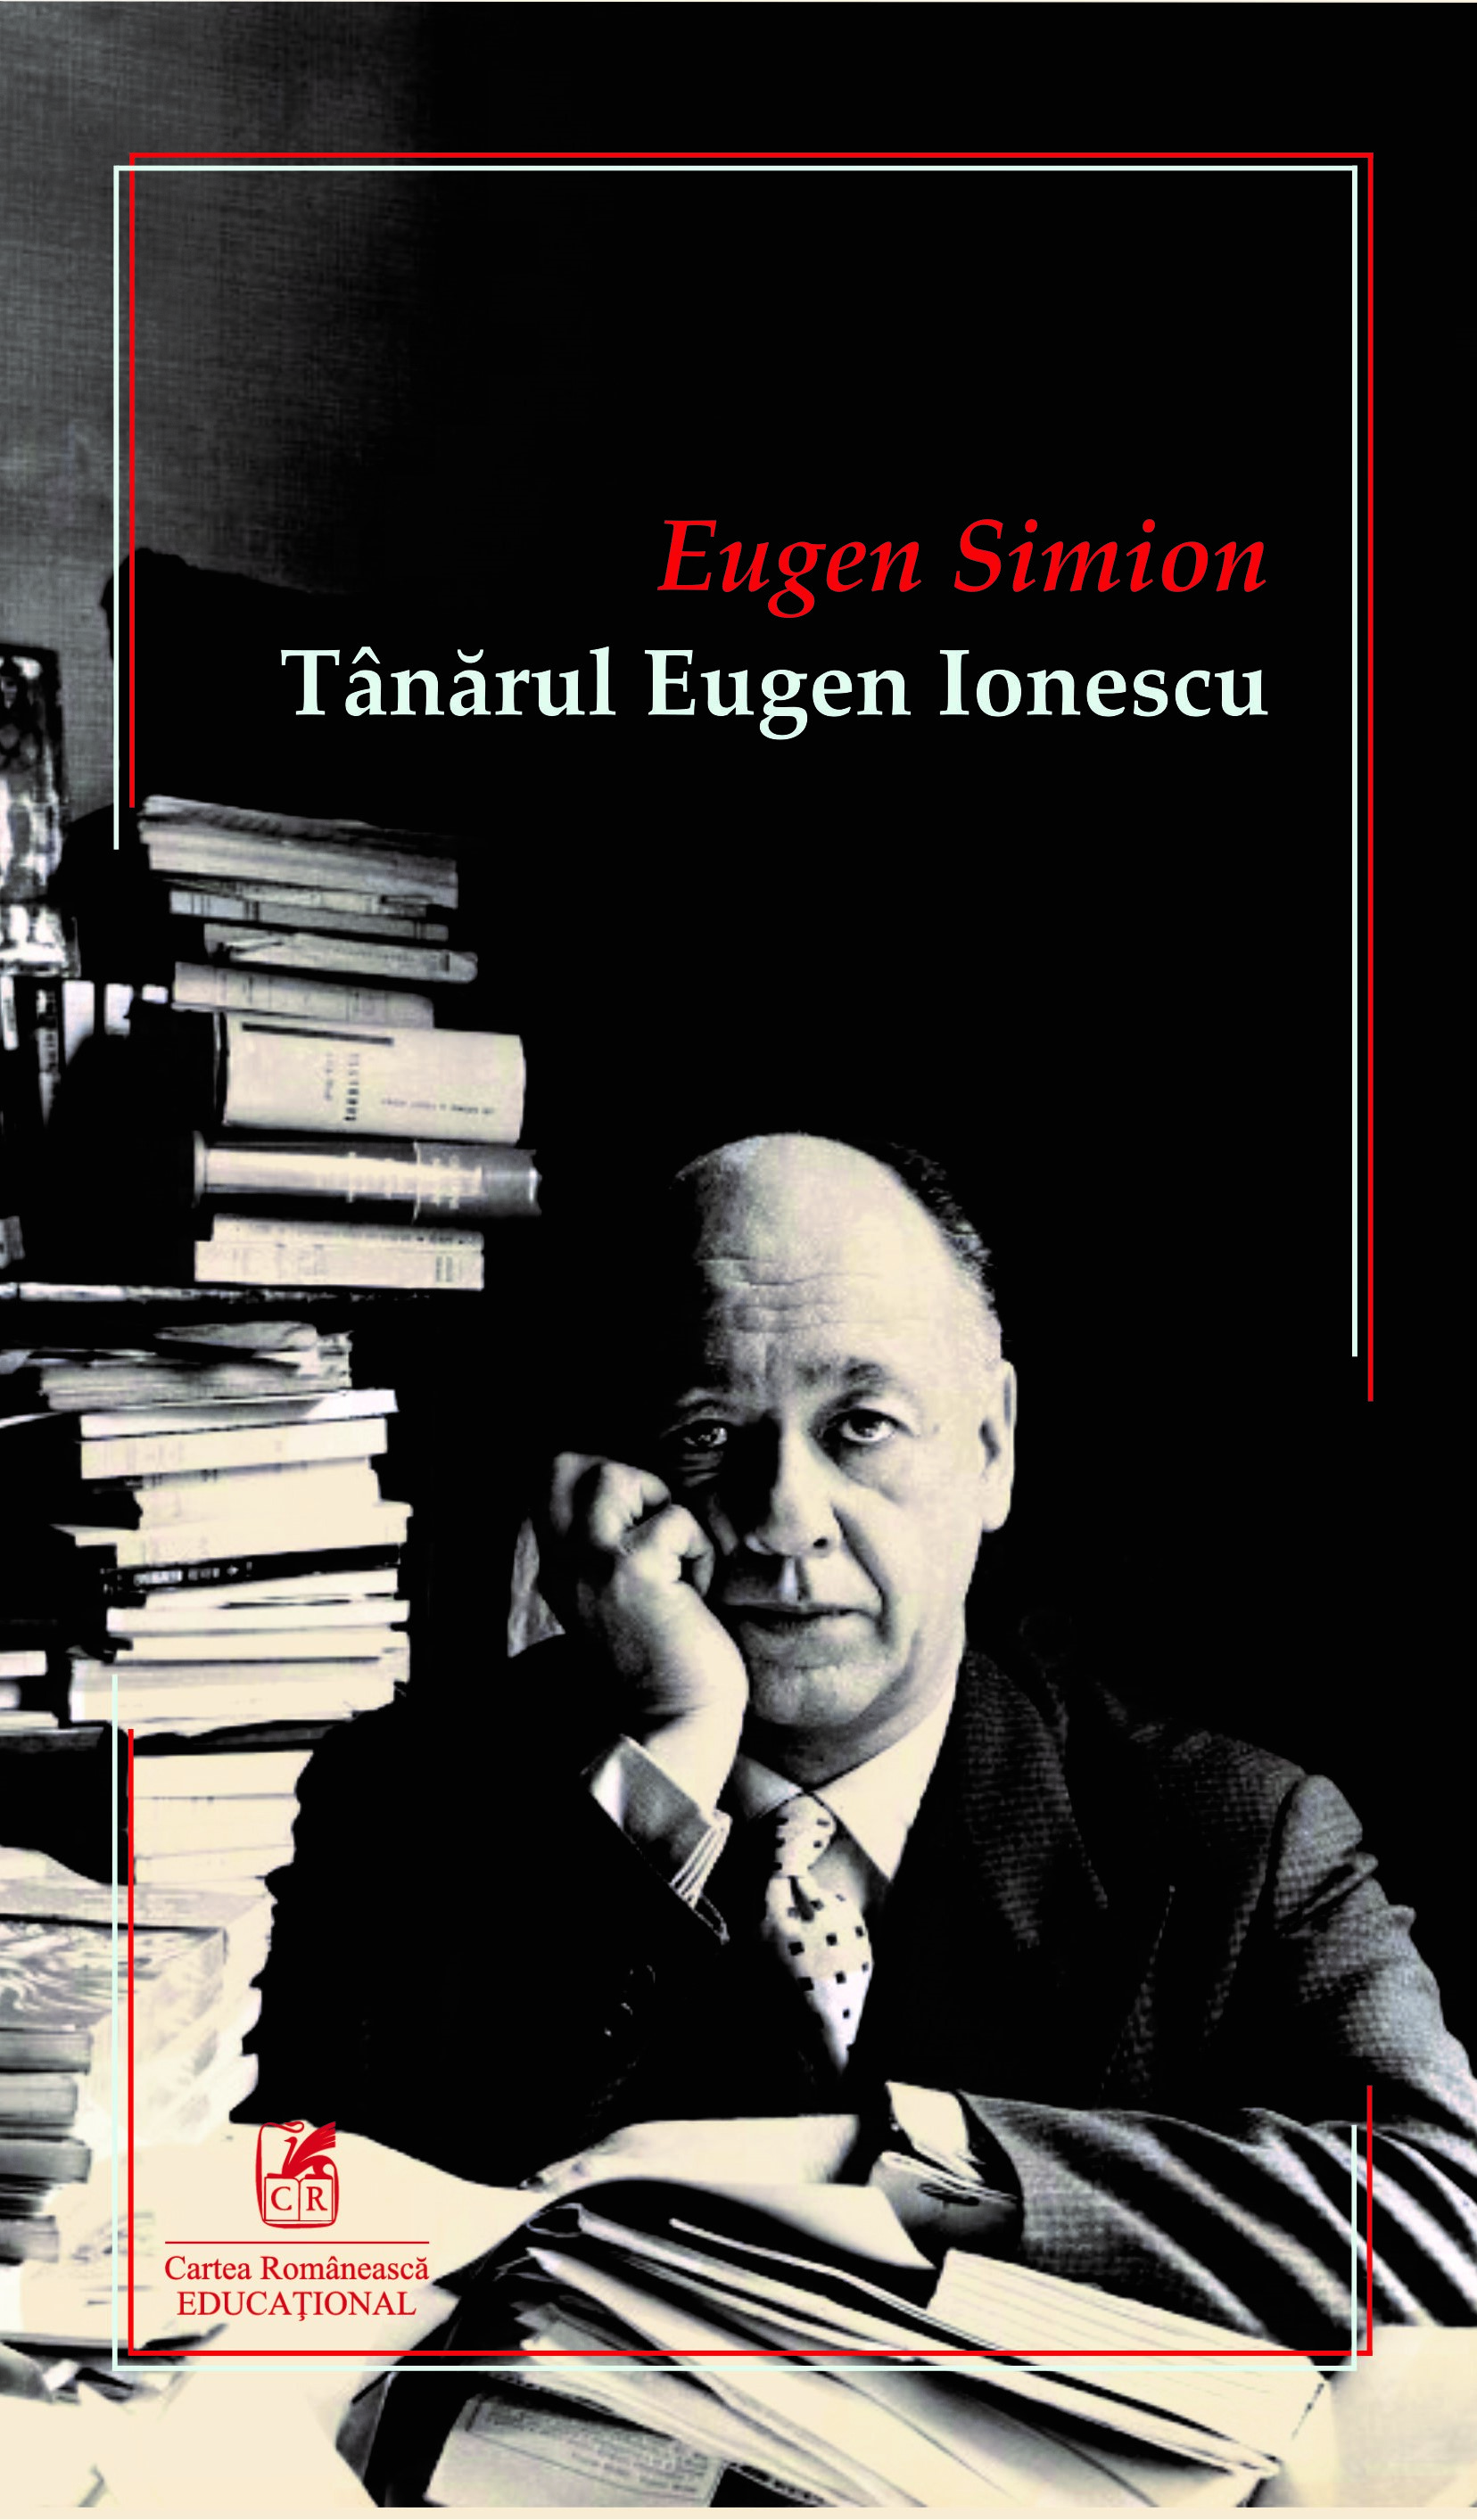 Tanarul Eugen Ionescu | Eugen Simion Cartea Romaneasca educational